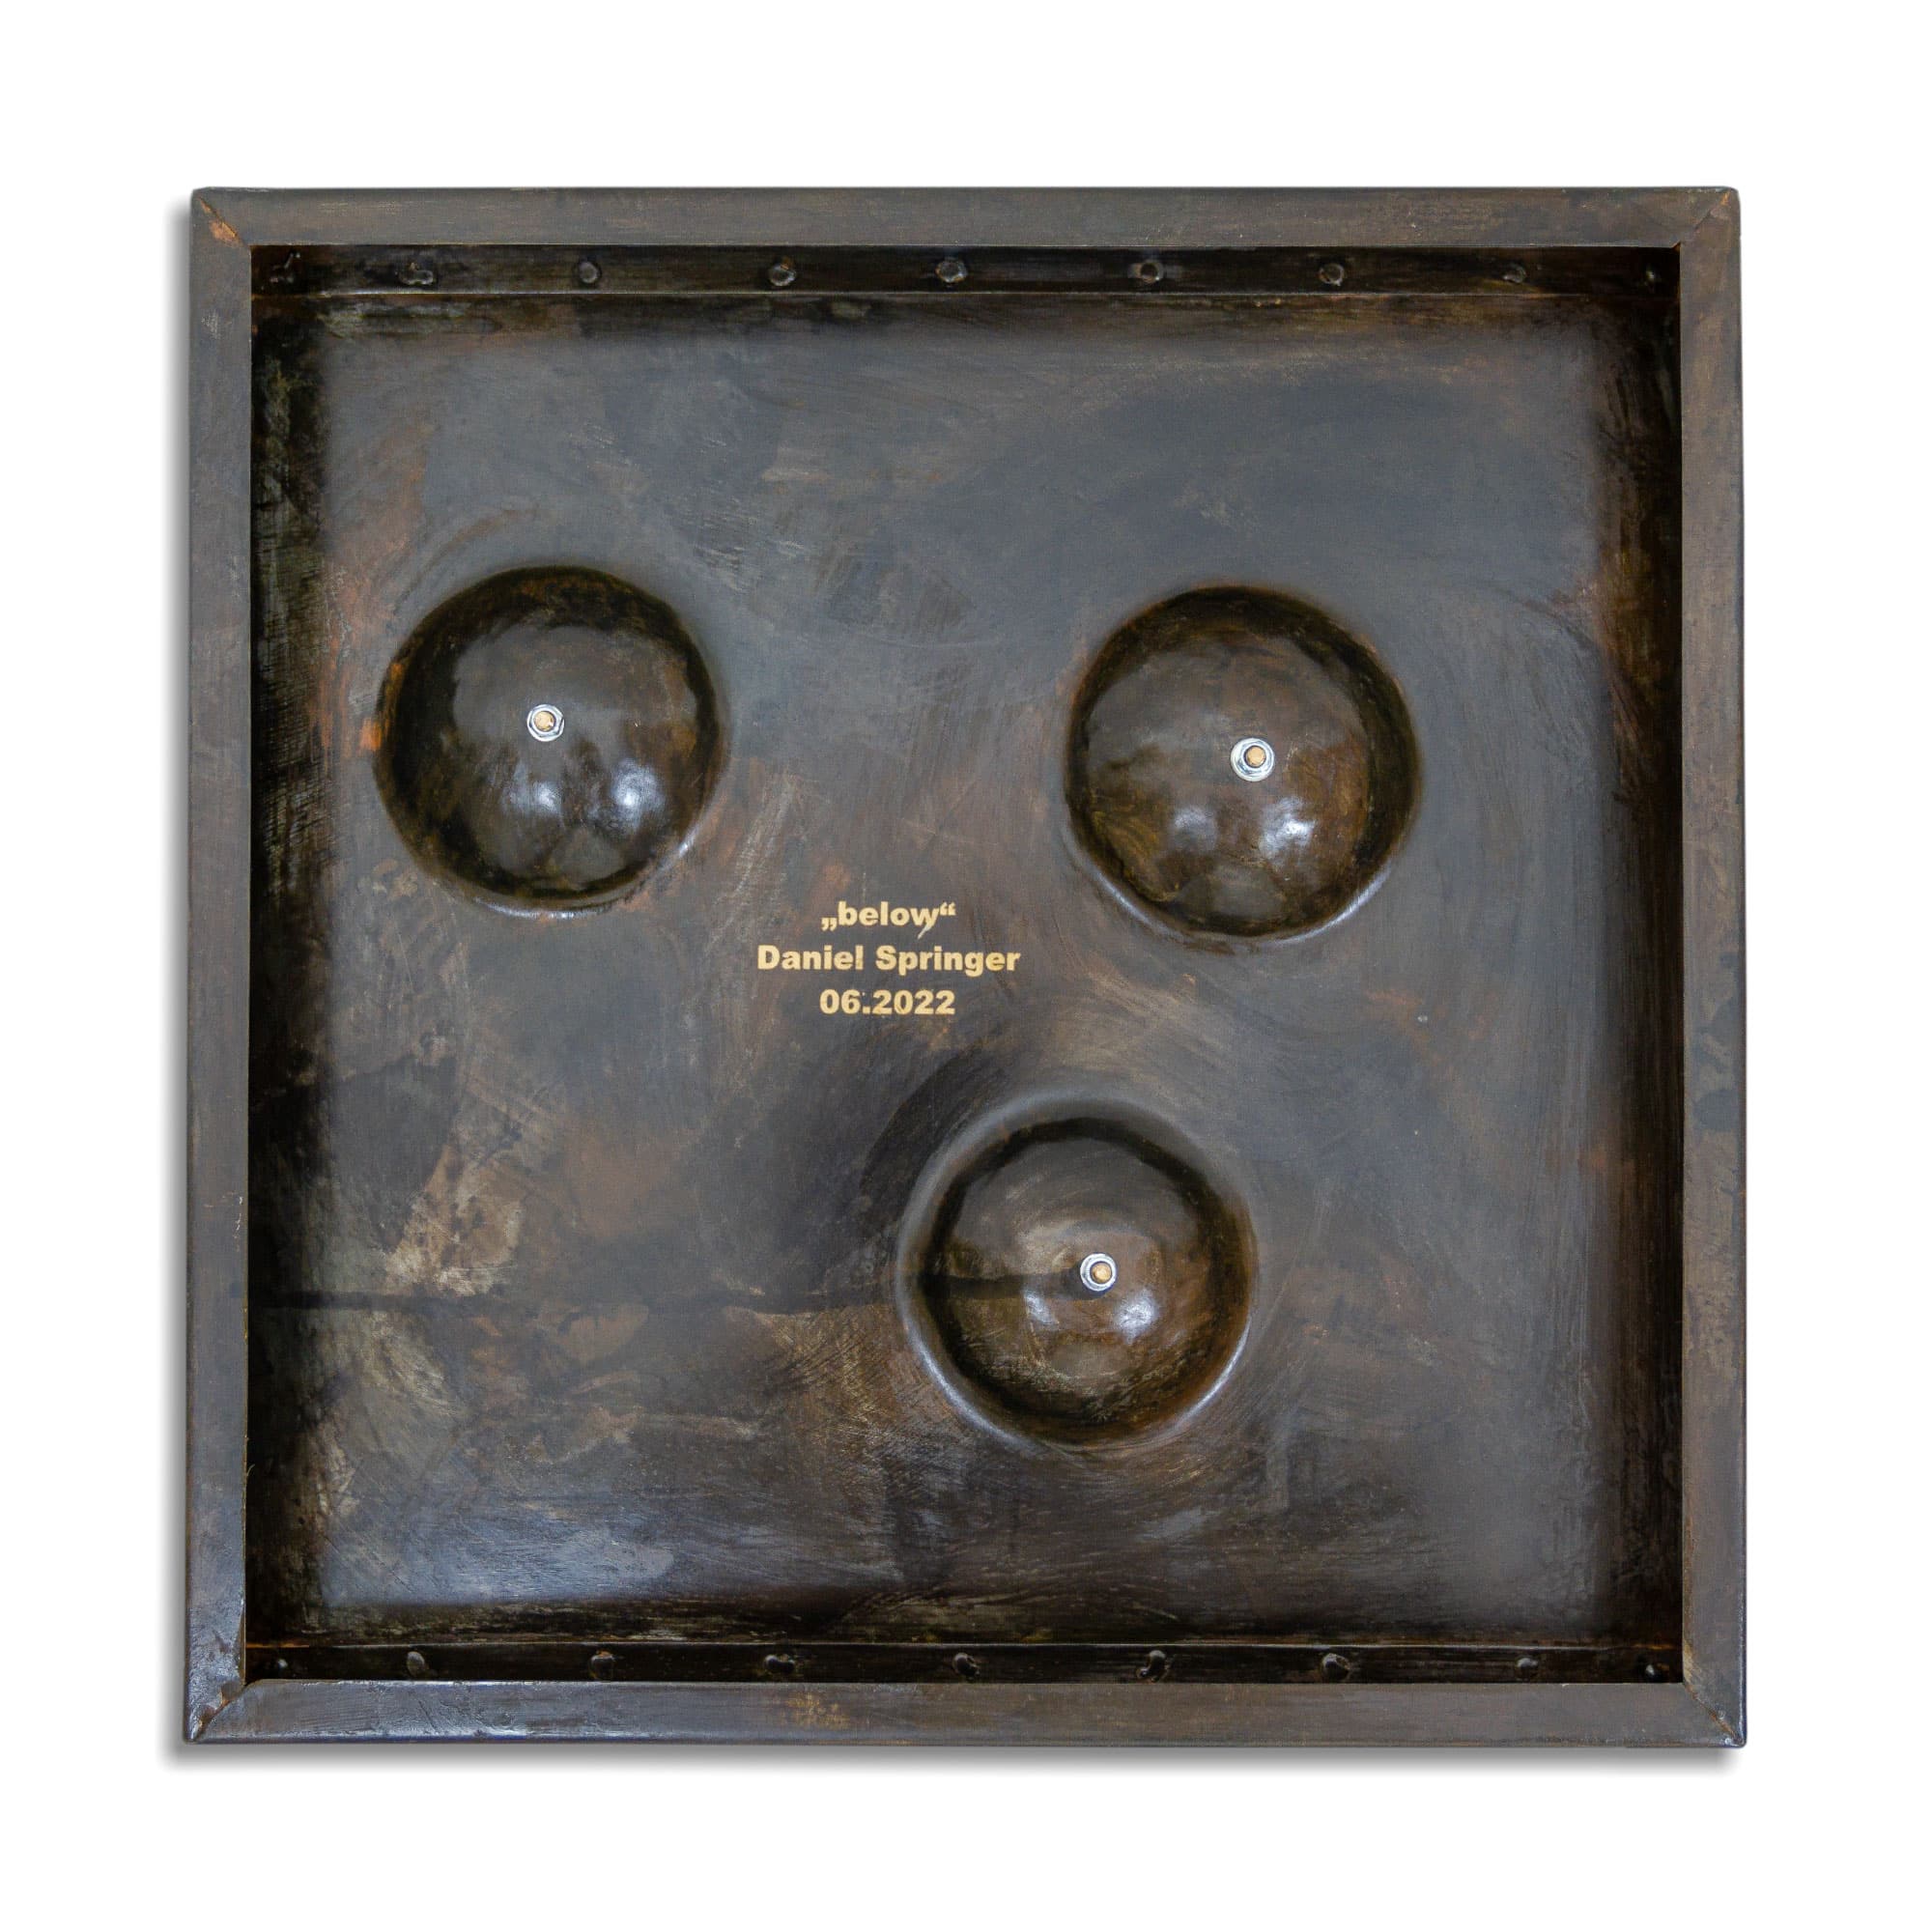 Kunstwerk mit dem Namen „below“. 3 Kugeln in 24 Karat vergoldet Oberfläche dunkel brüniert. Vom Stahlbildhauer im Atelier Daniel Springer